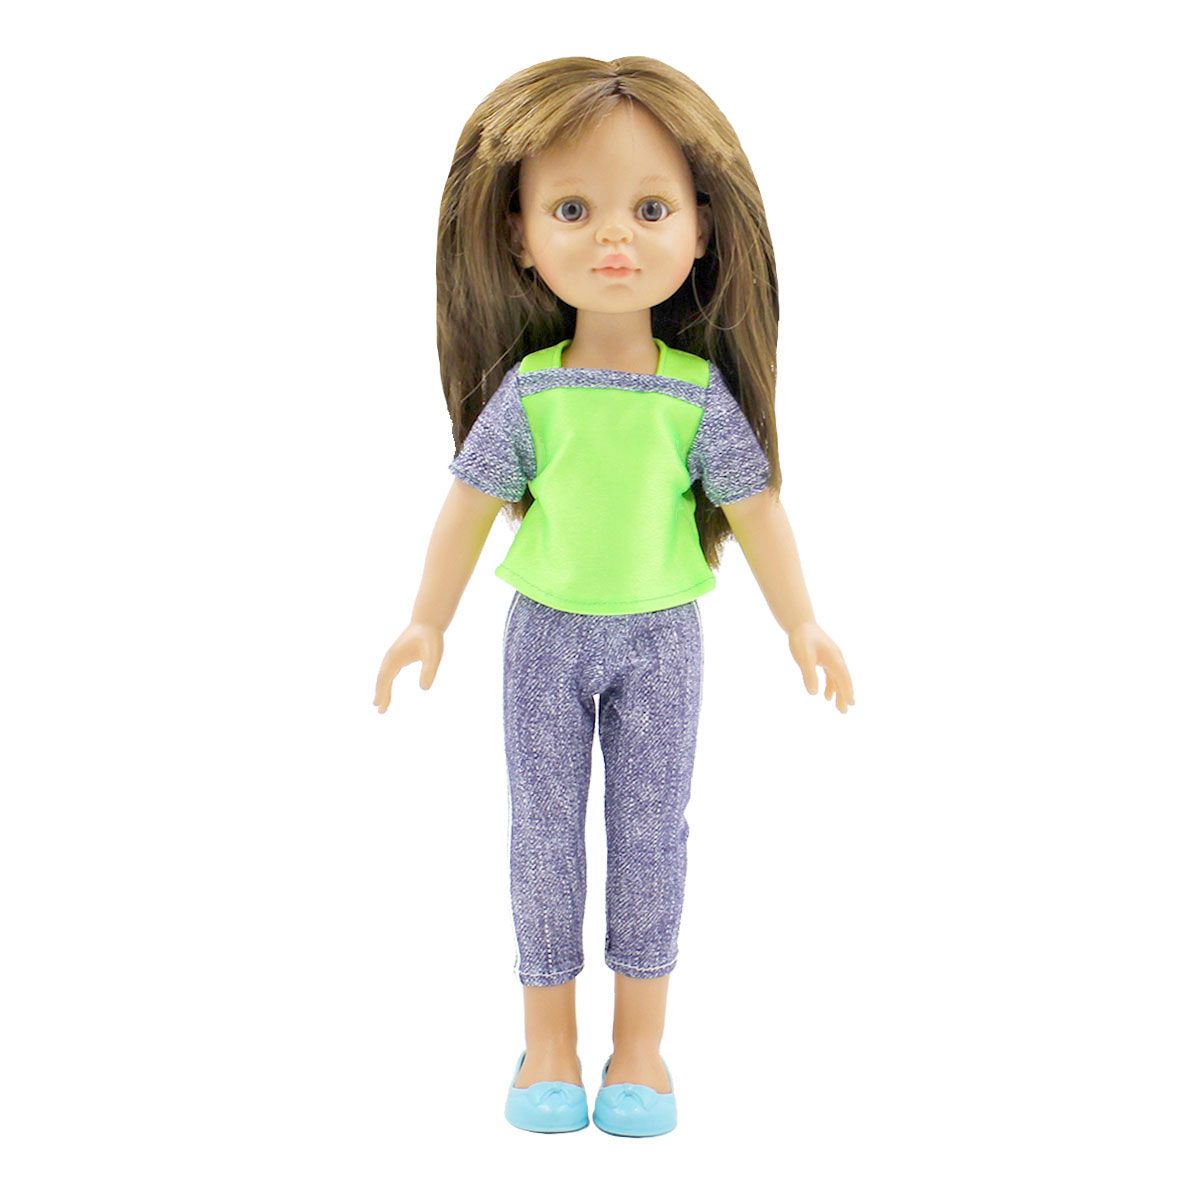 Одежда Dolls Accessories для Паола Рейна и других кукол ростом 32 см Неон